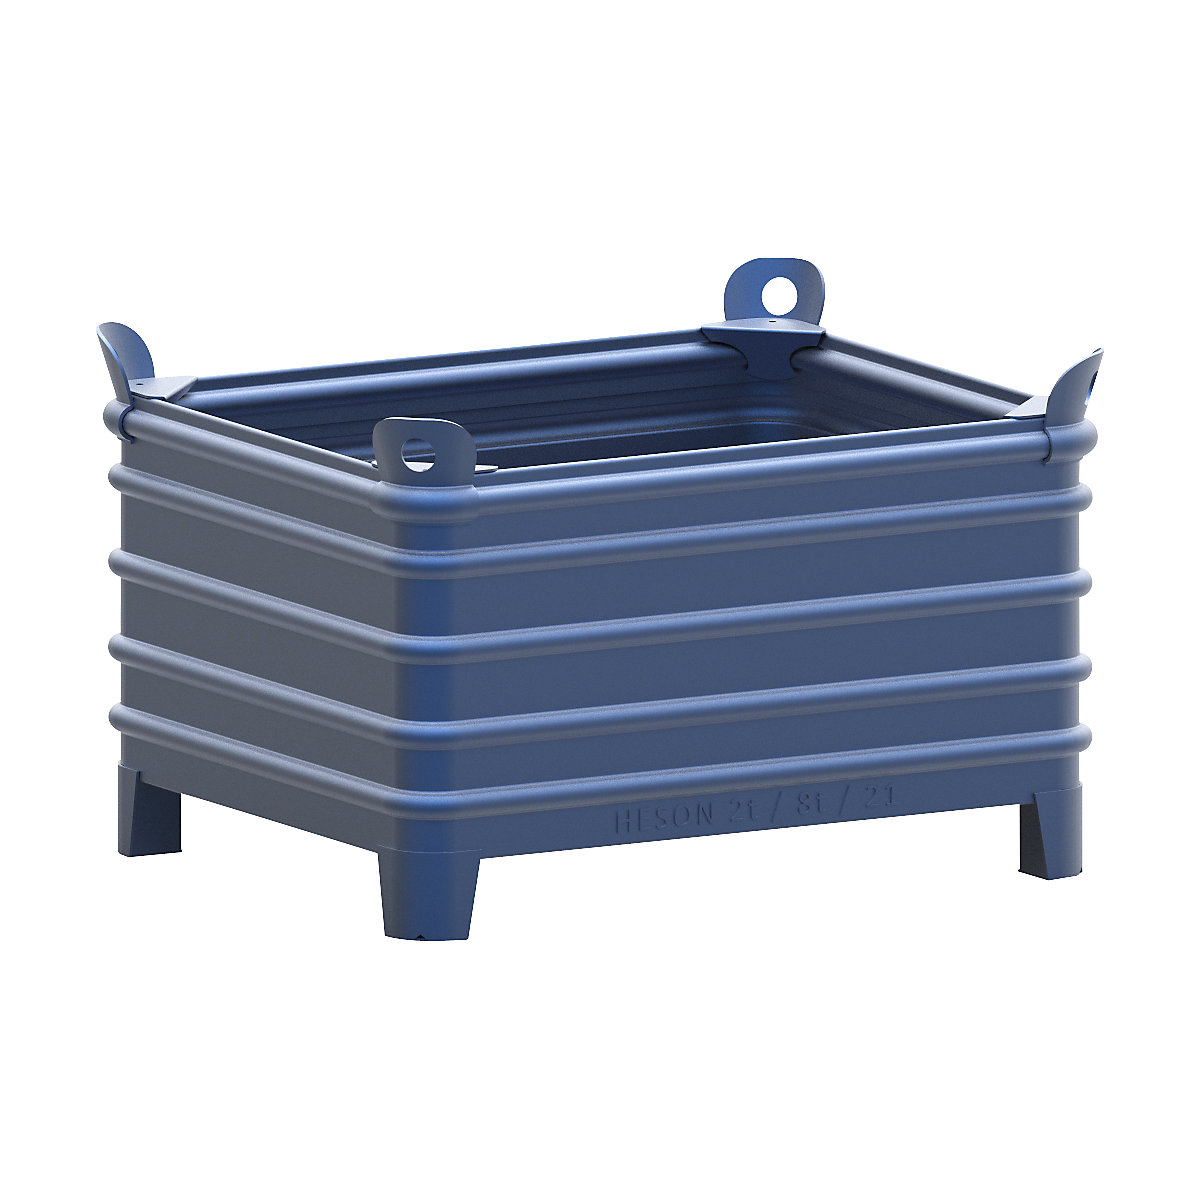 Schwerlast-Stapelbehälter Heson, BxL 800 x 1000 mm, mit Ecktaschen, blau lackiert, ab 10 Stk-8